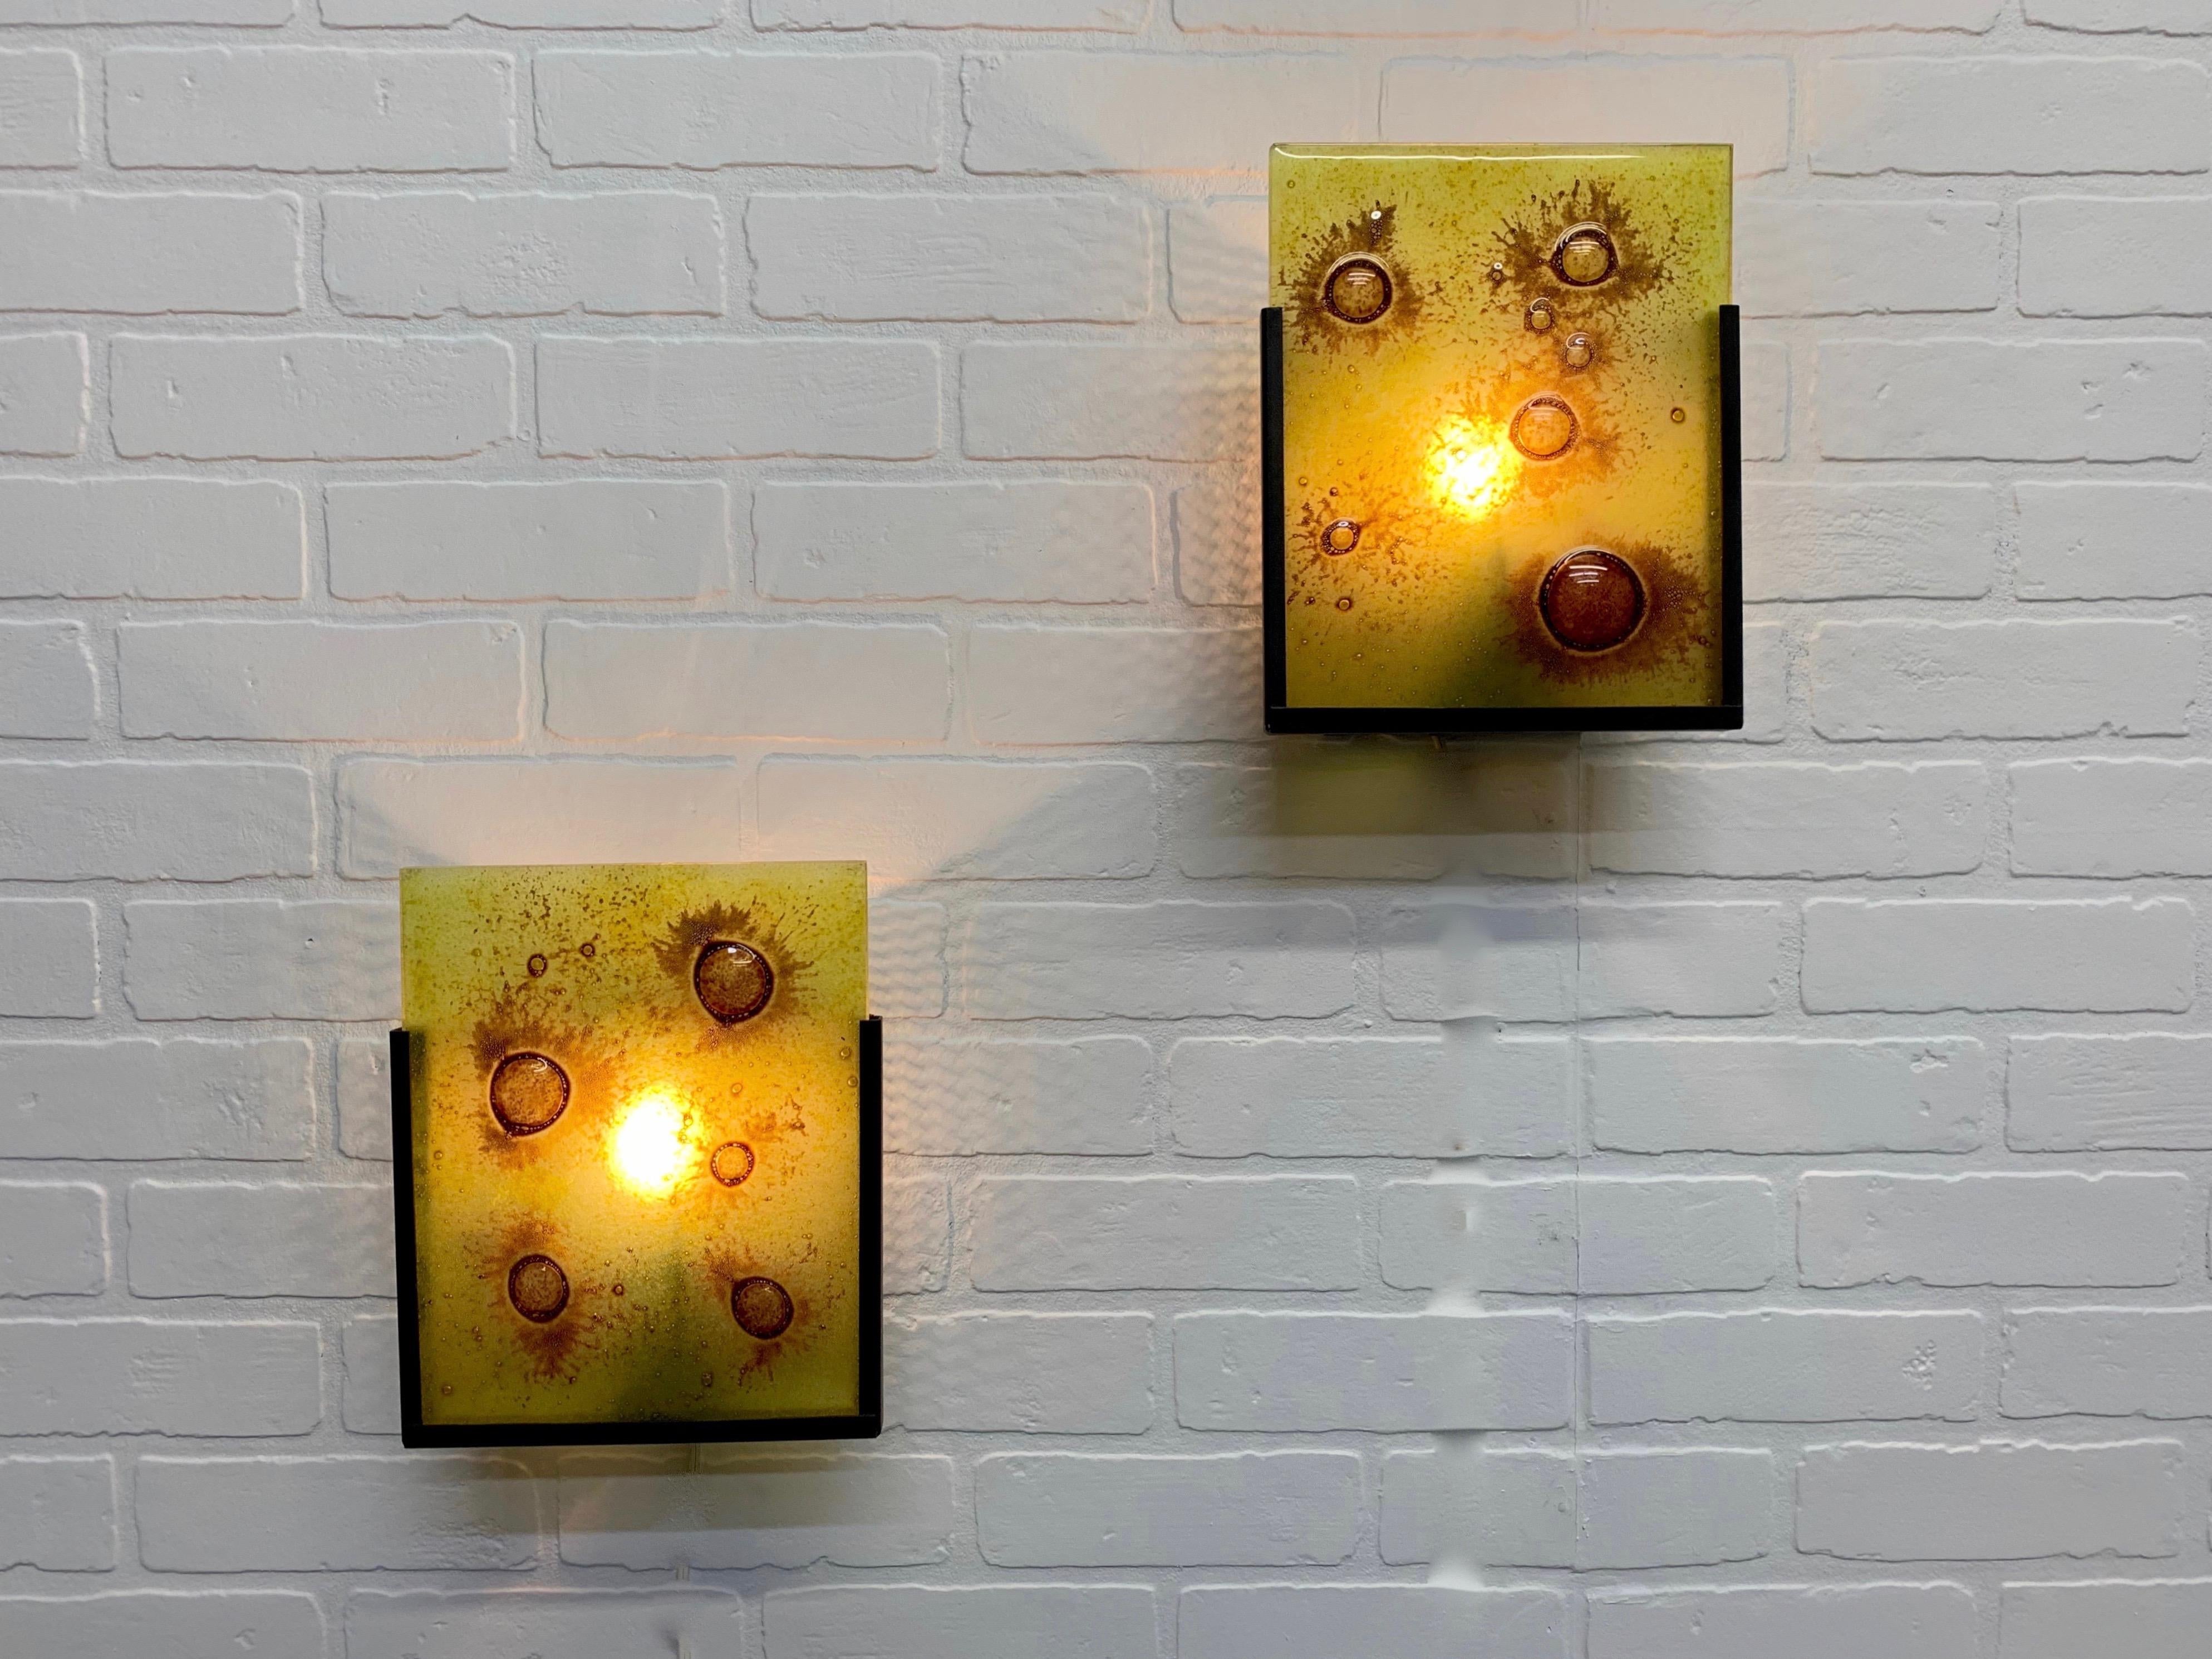 Paar bronzefarbene, pulverbeschichtete, perforierte Wandhalterungen mit Kunstglasscheibe, die in die Vorderseite passt und von hinten mit einer Glühbirne beleuchtet wird.